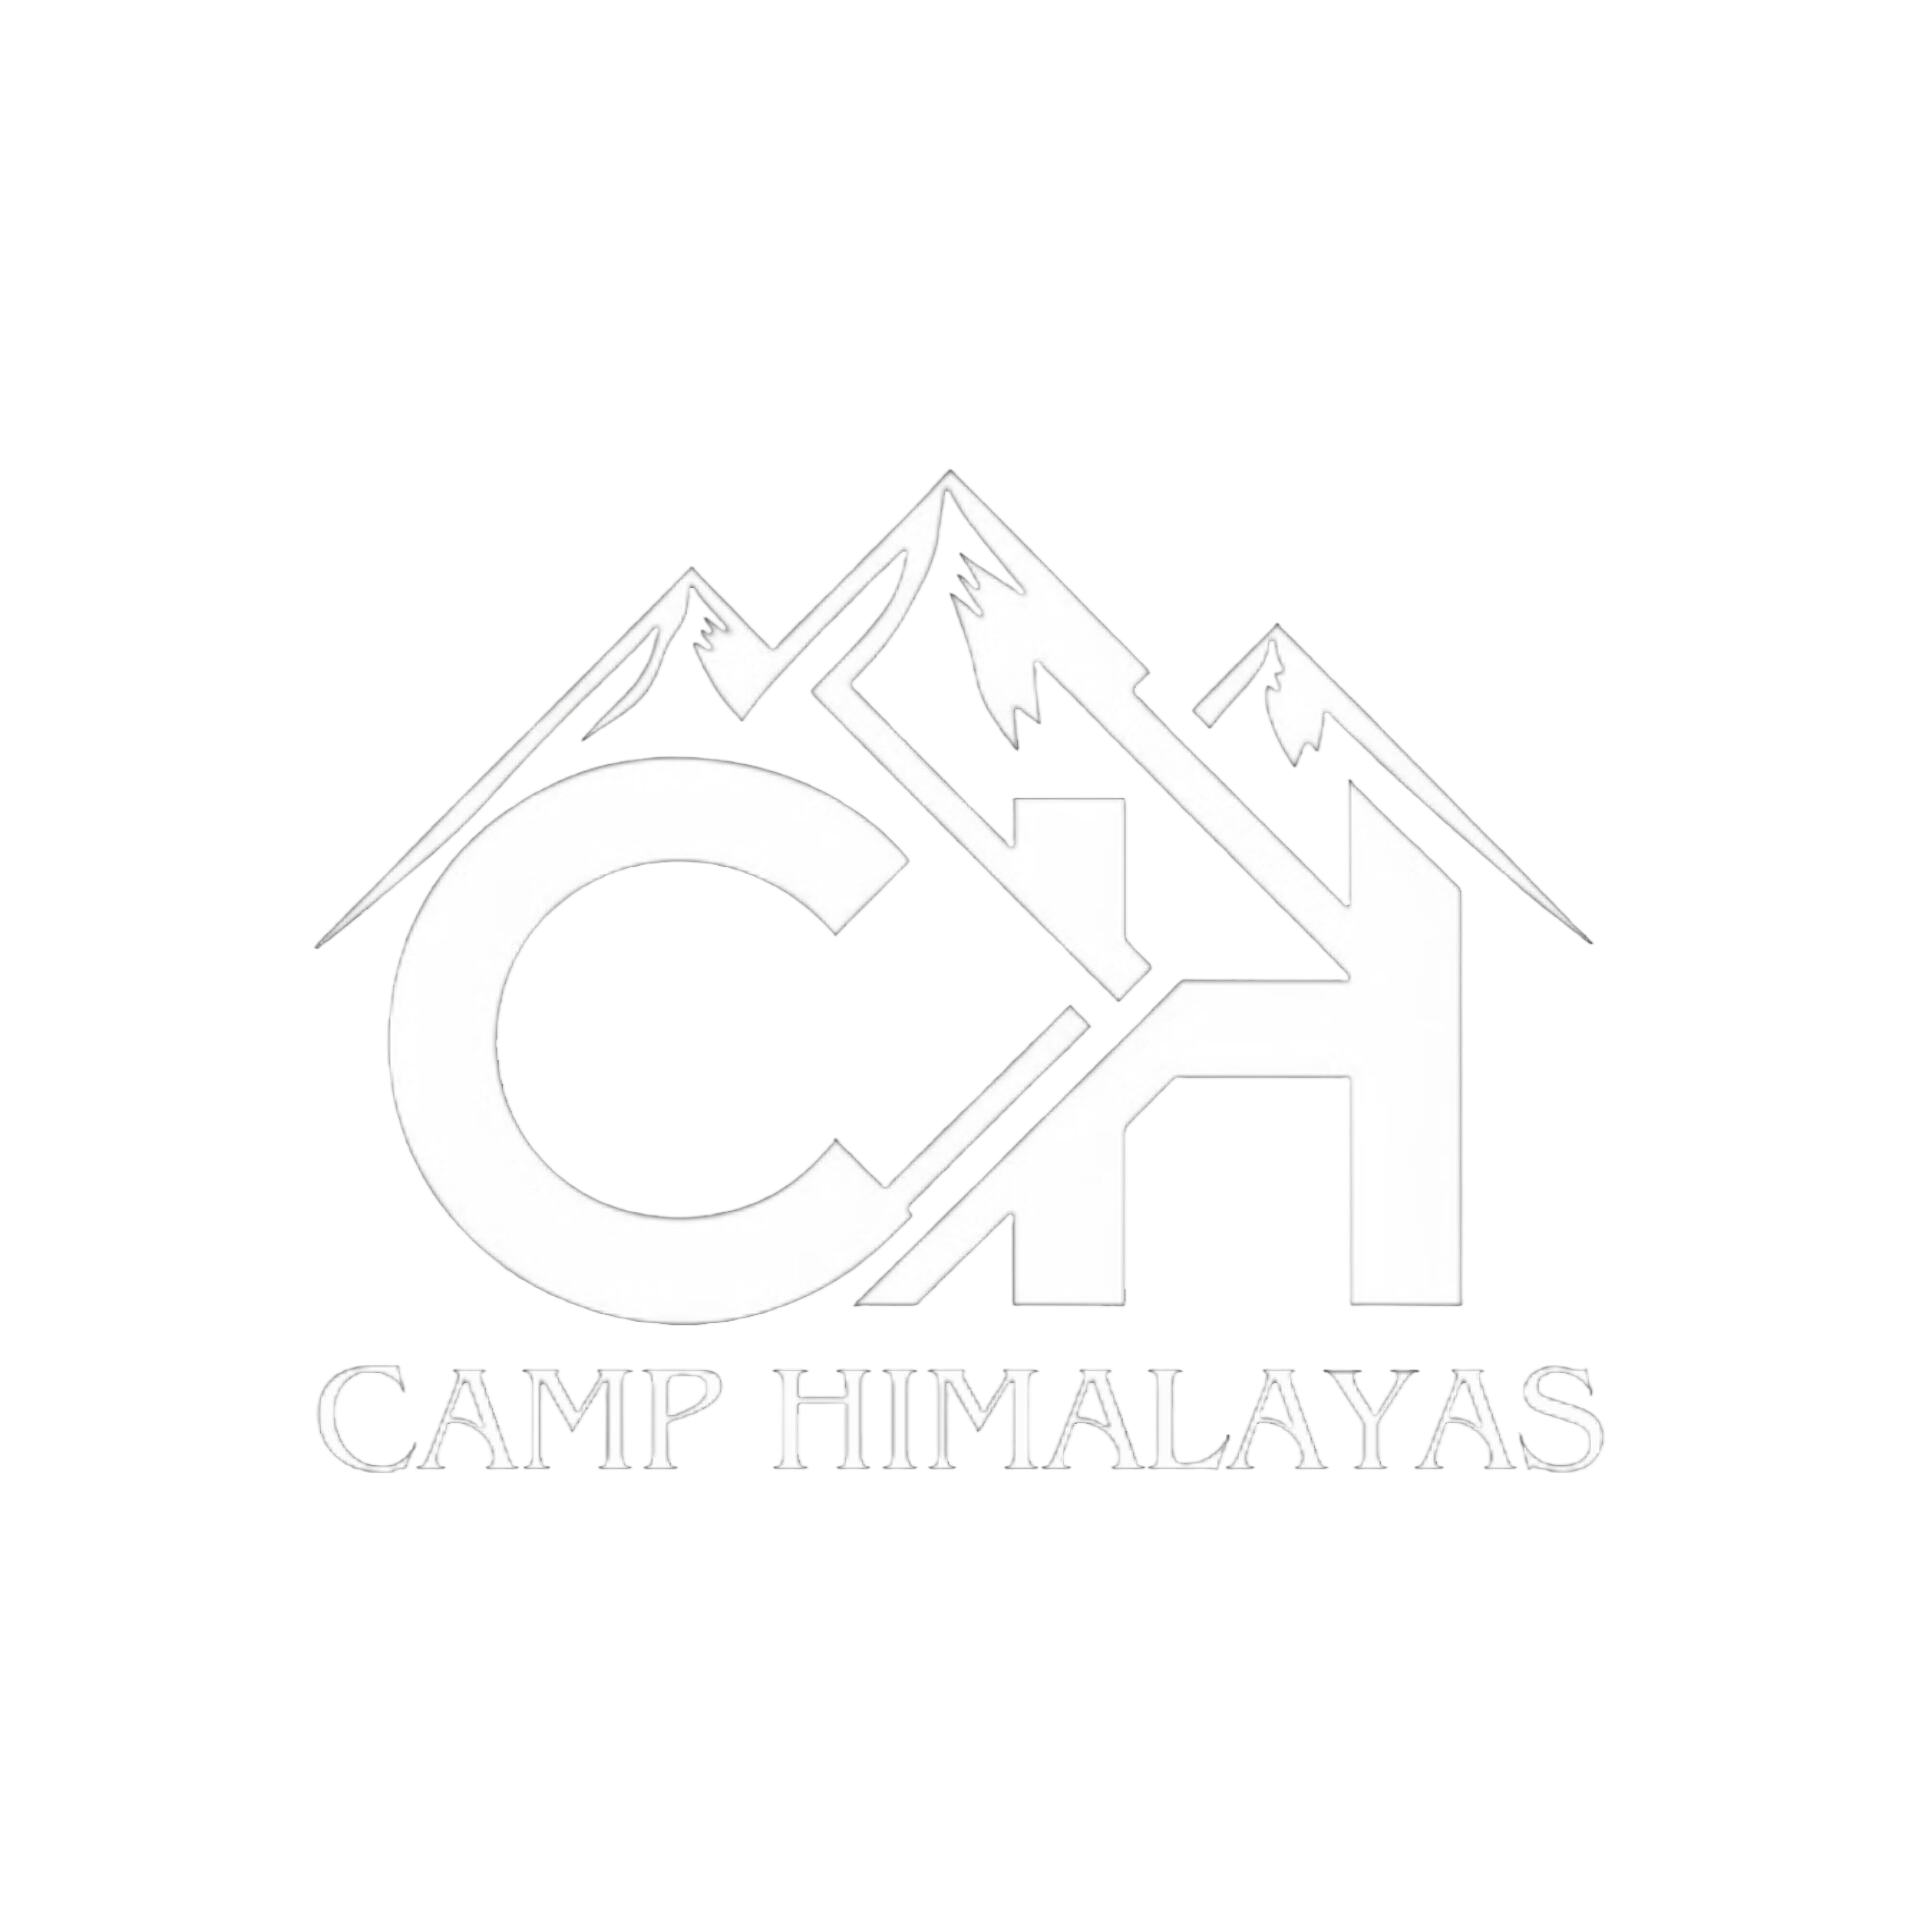 Camp Himalayas